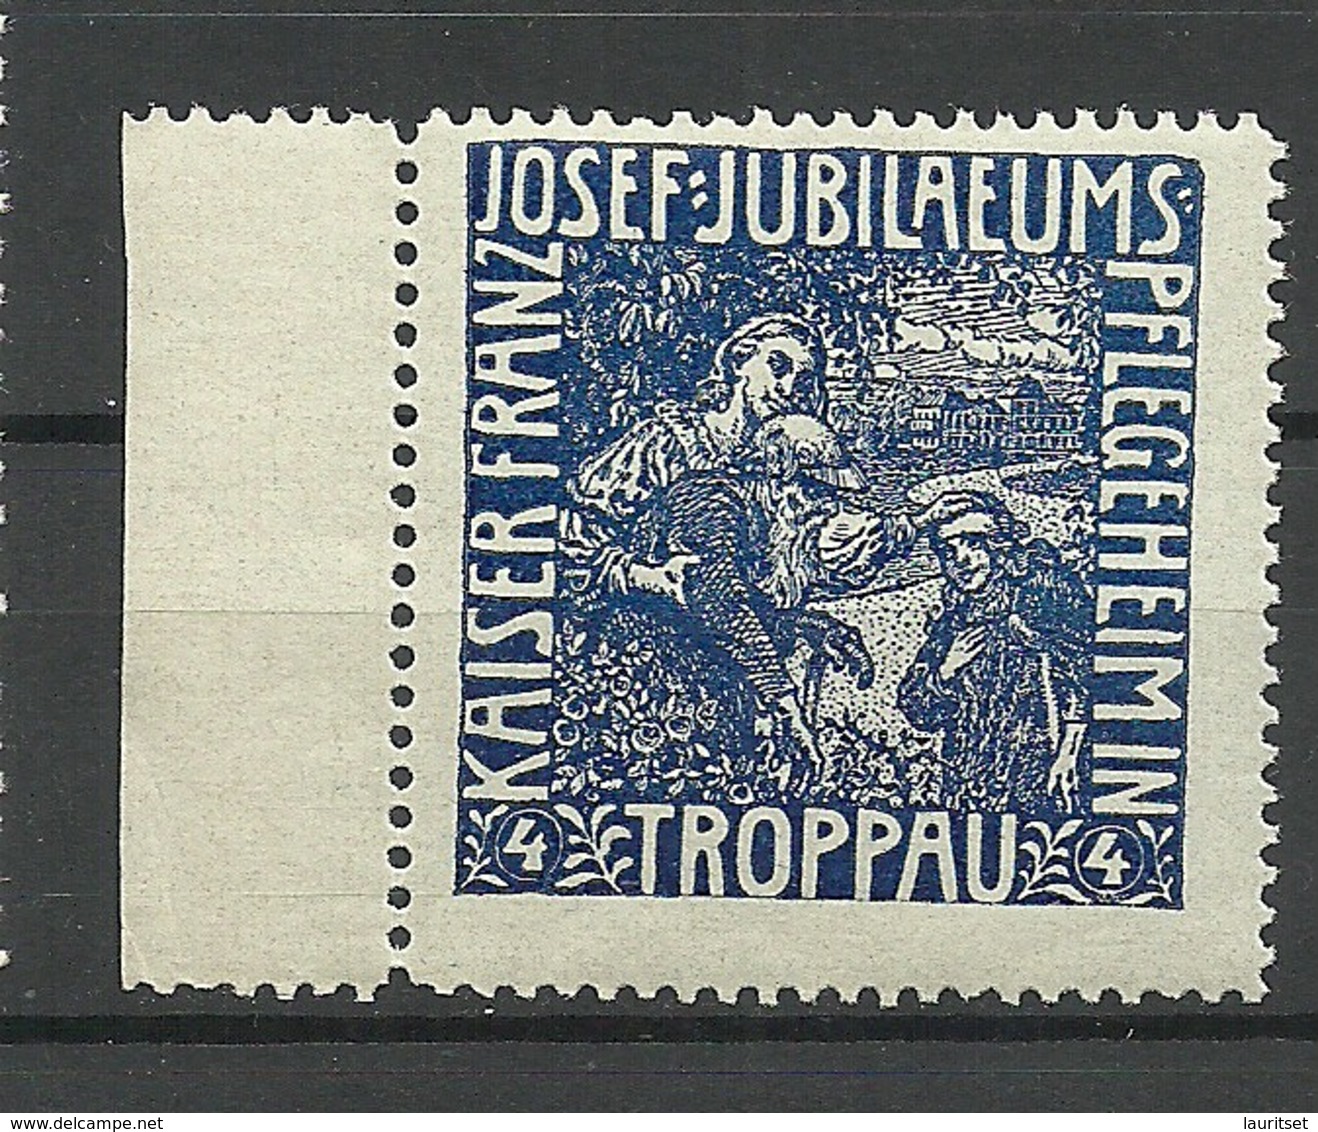 POLAND Deutschland Ca 1910 Keiser Franz Joseph Jubiläums Pflegeheim Troppau Vignette Werbemarke MNH - Cinderellas